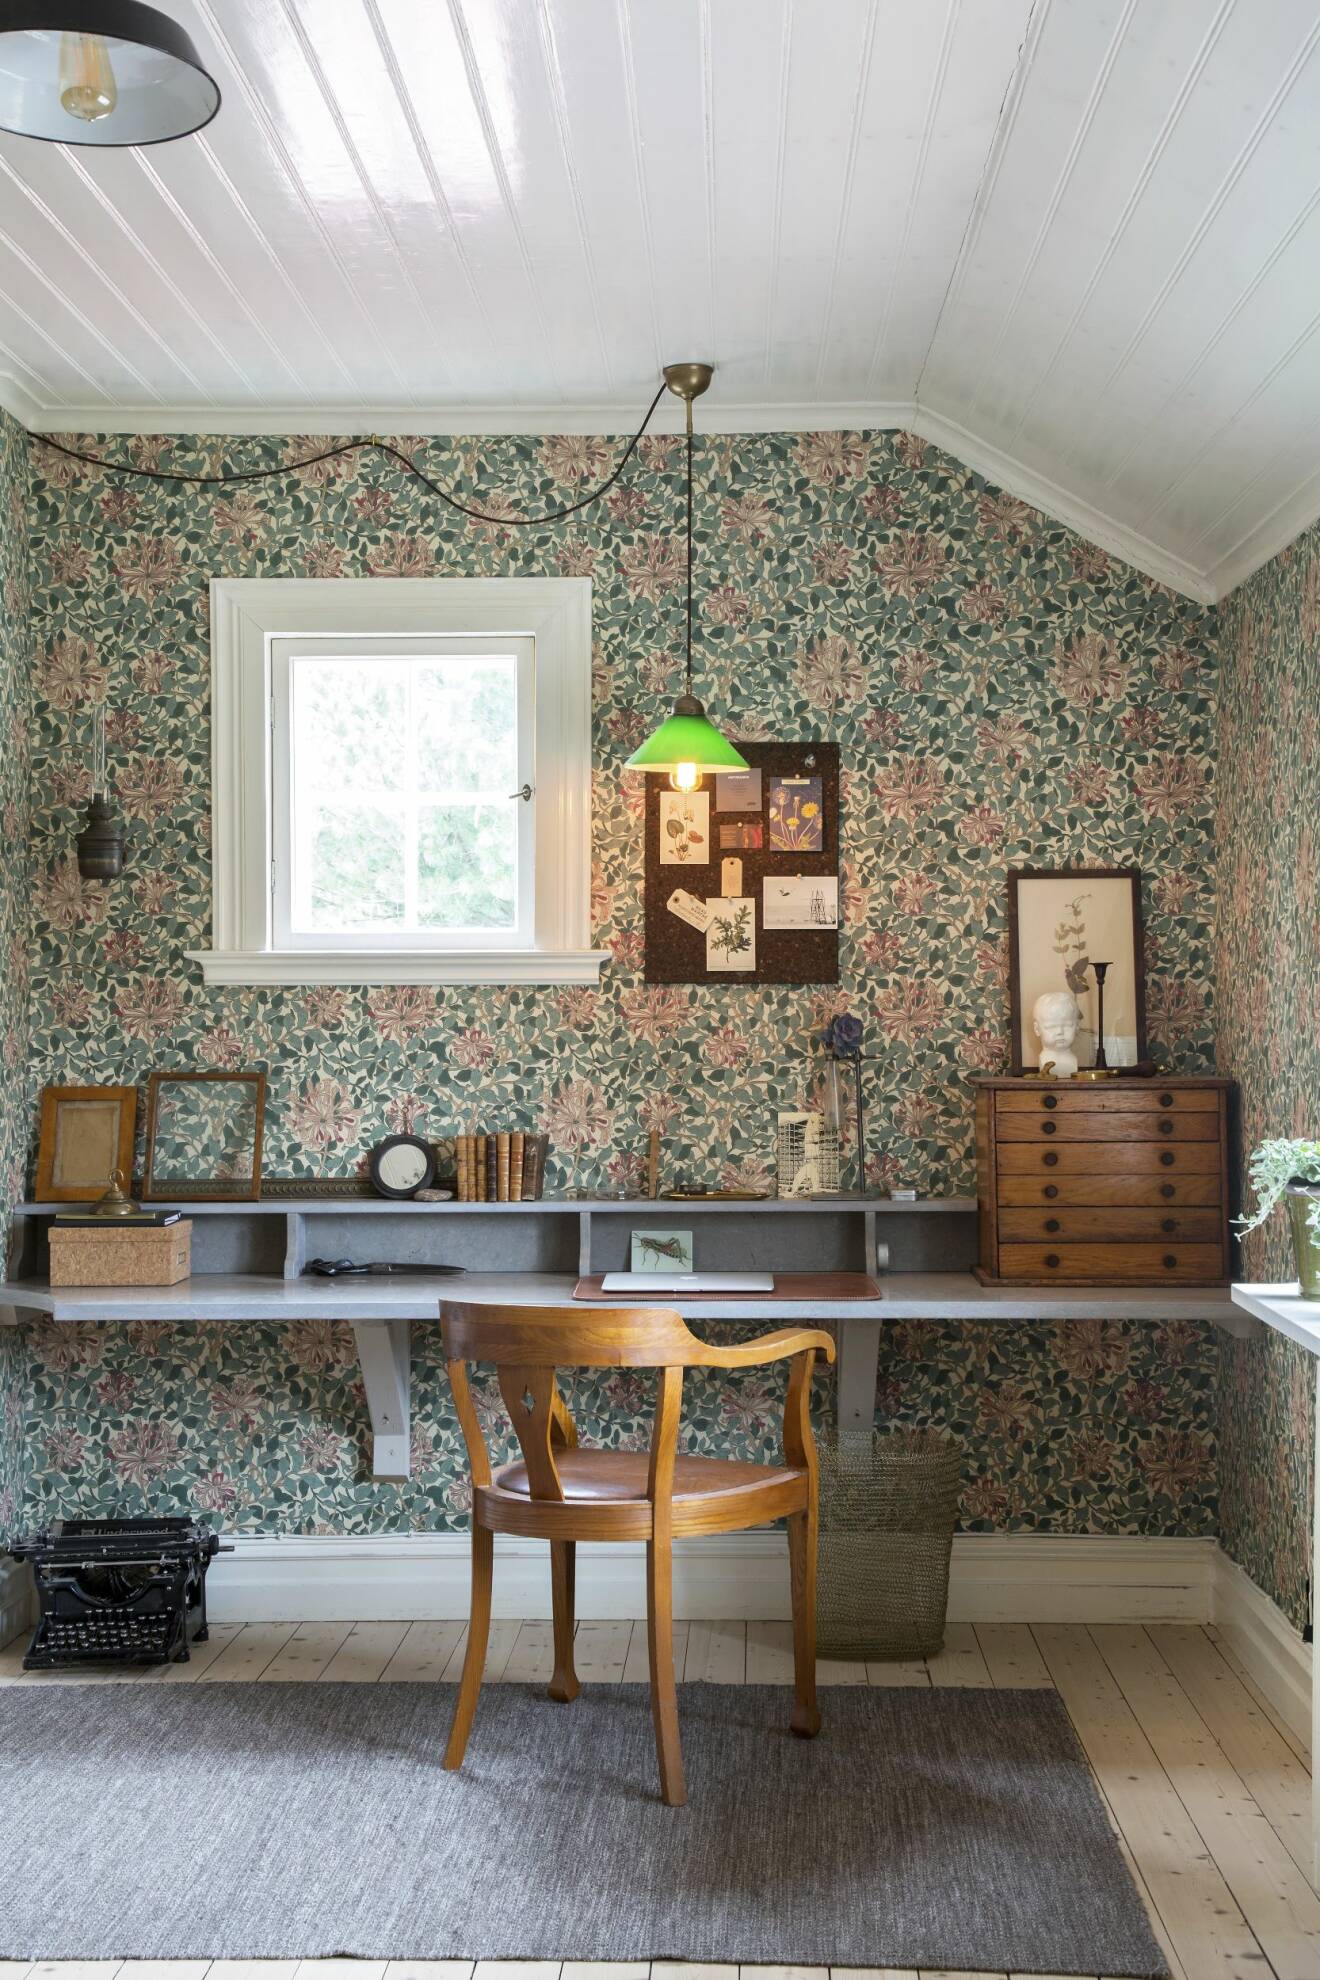 Skrivbord med mönstret Honeysuckle, designat av William Morris dotter May Morris.